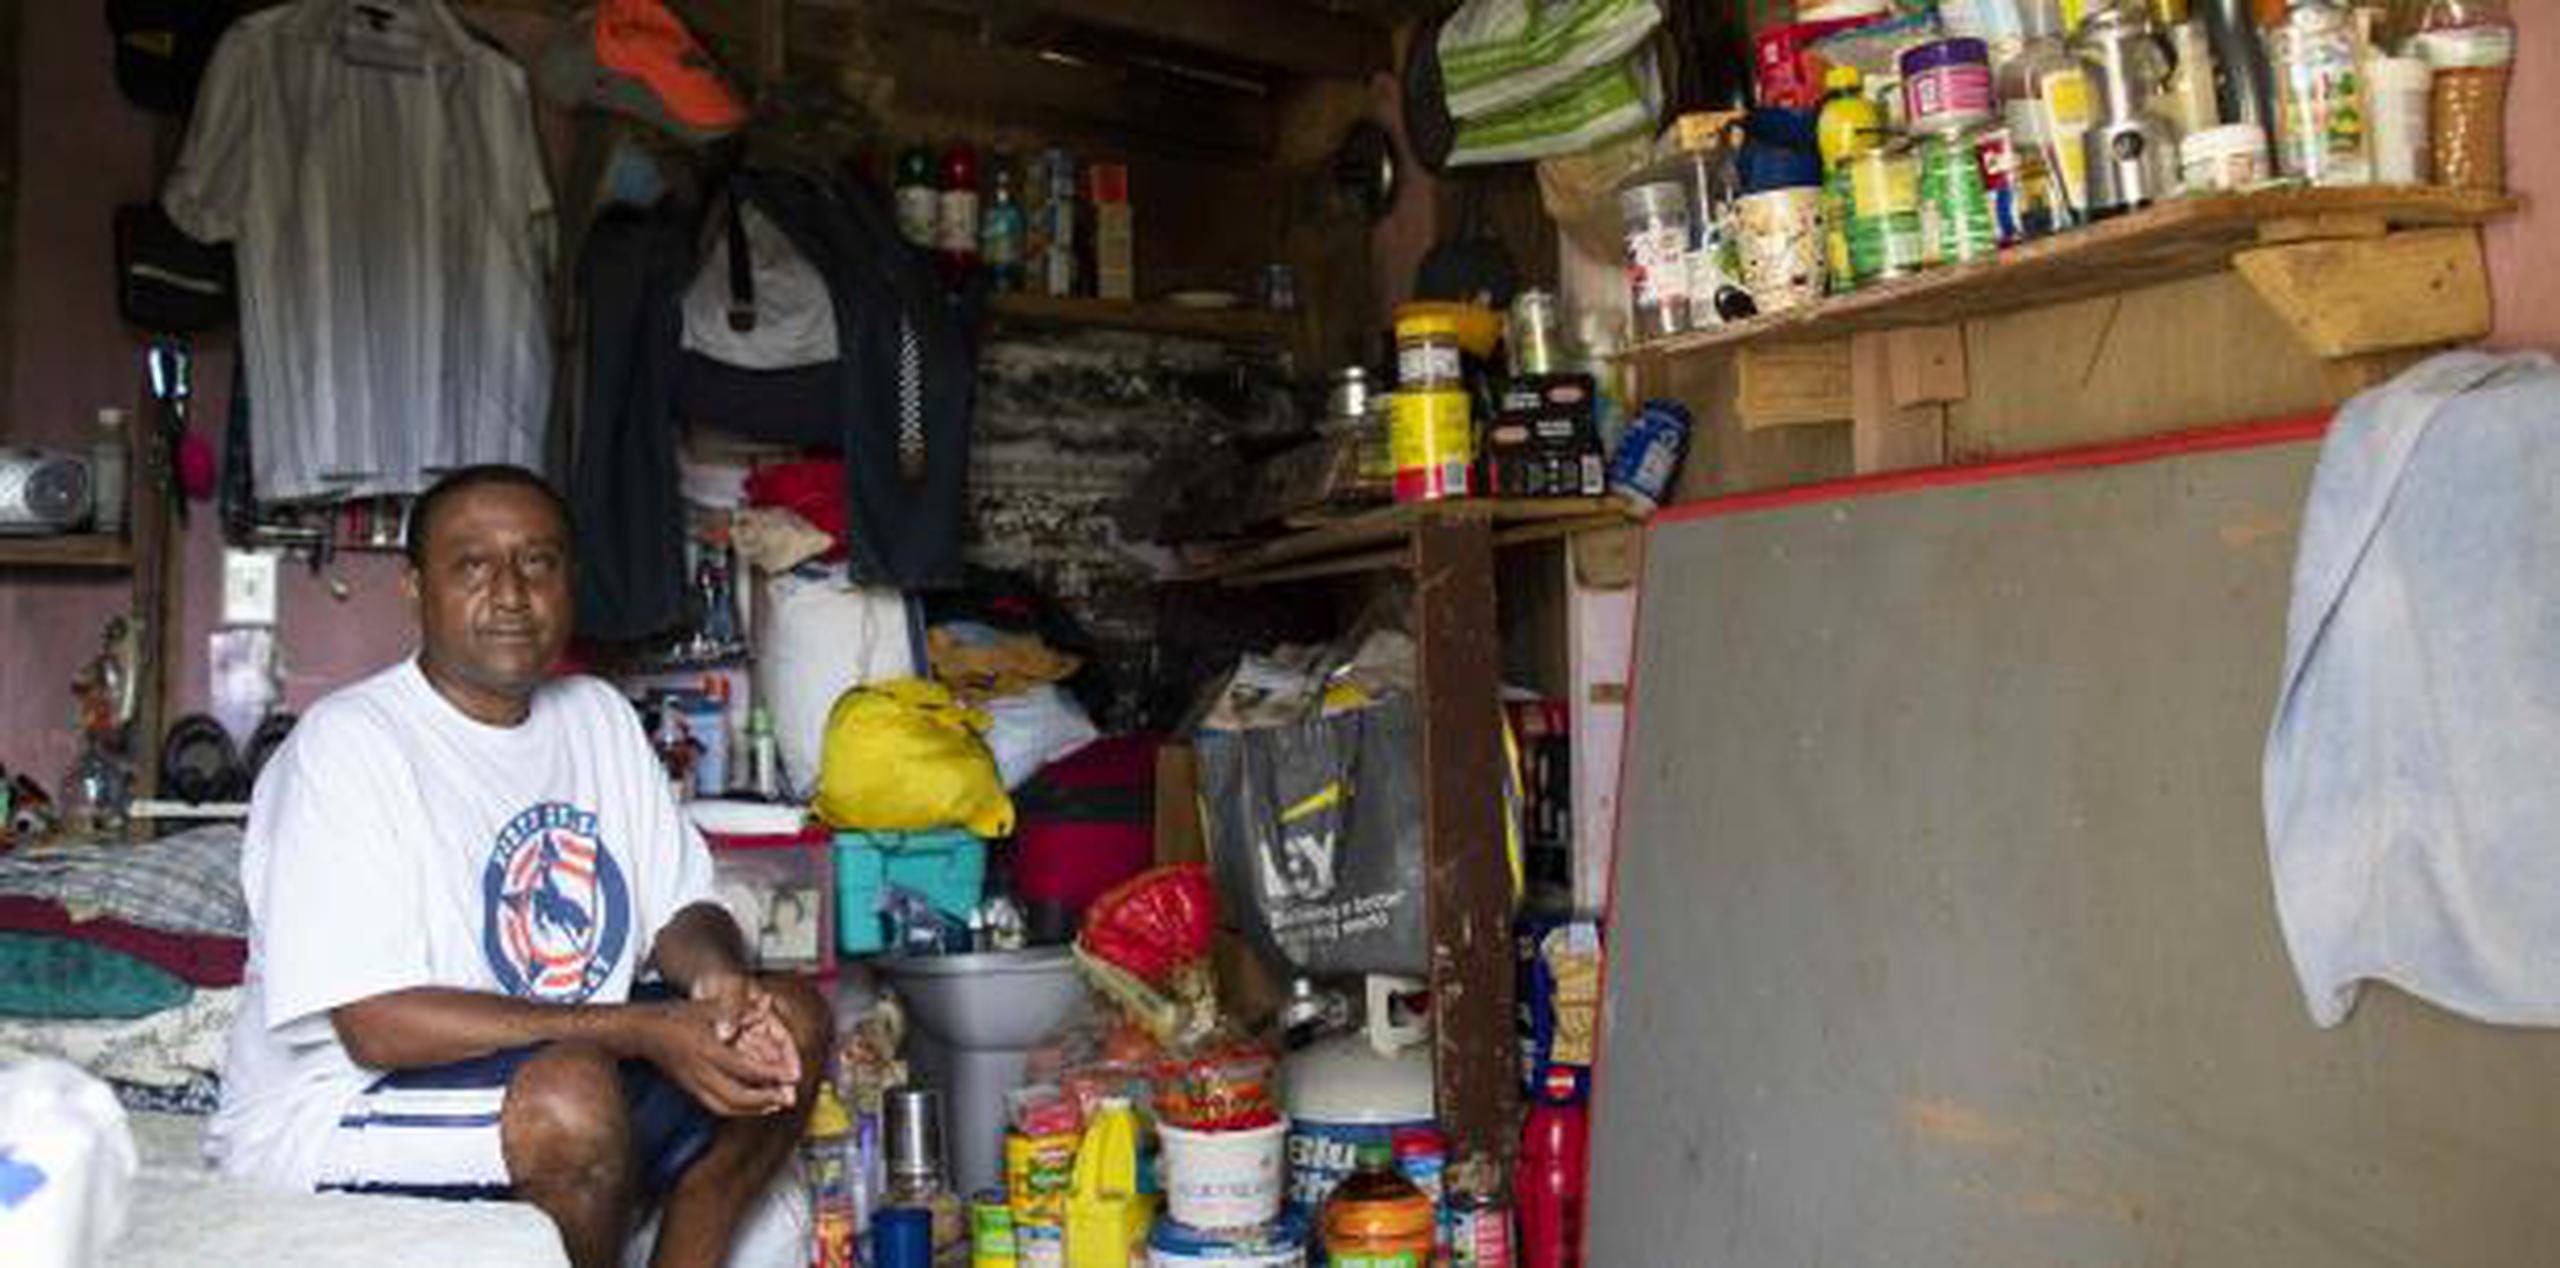 Pablo De Jesús Carmona pide desesperadamente ayuda para reconstruir su hogar y
el de su hermano, quien padece retraso mental. (tonito.zayas@gfrmedia.com)